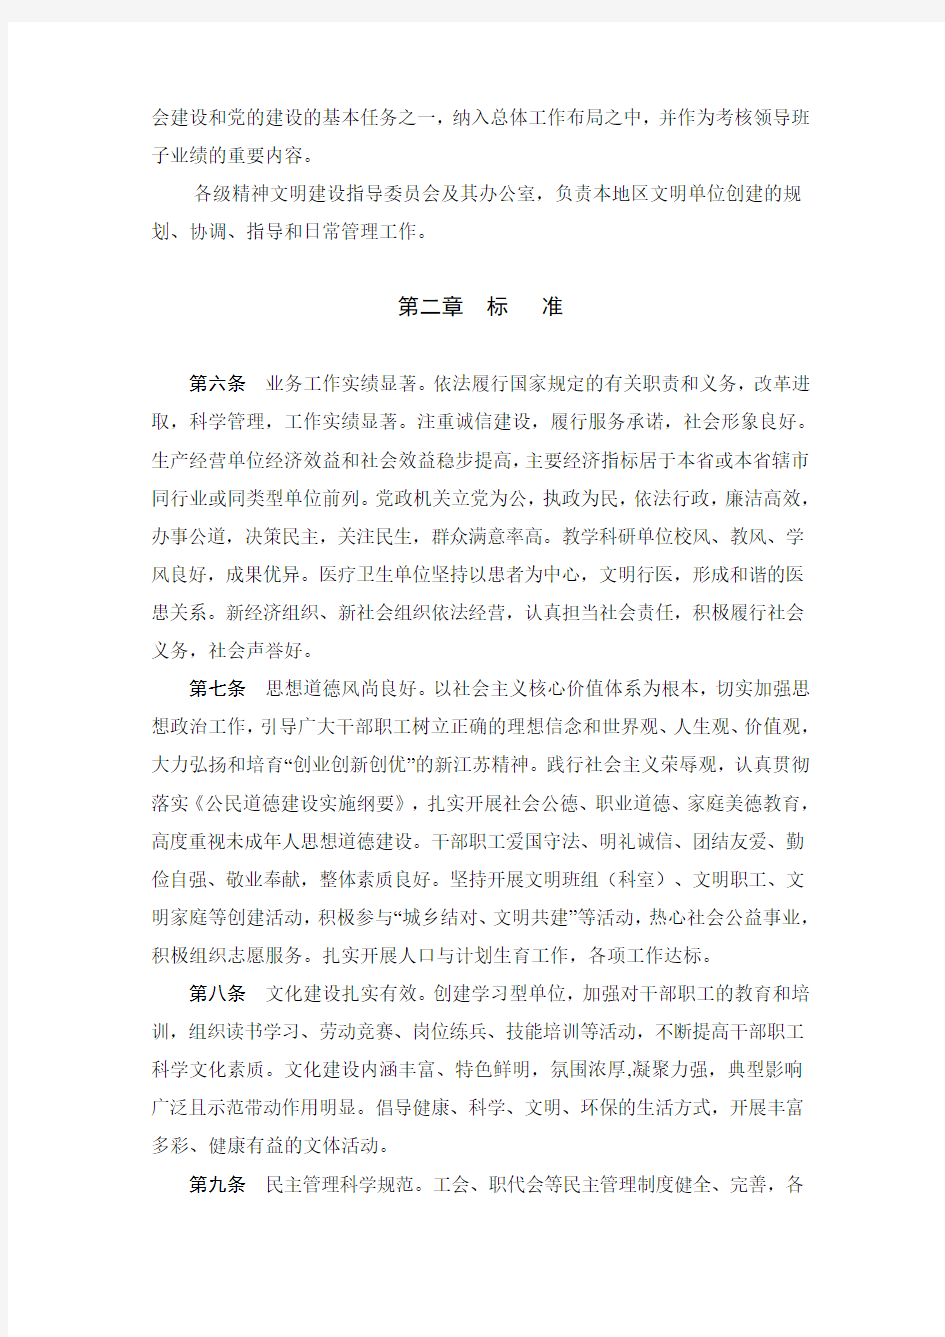 江苏省文明单位创建管理规定